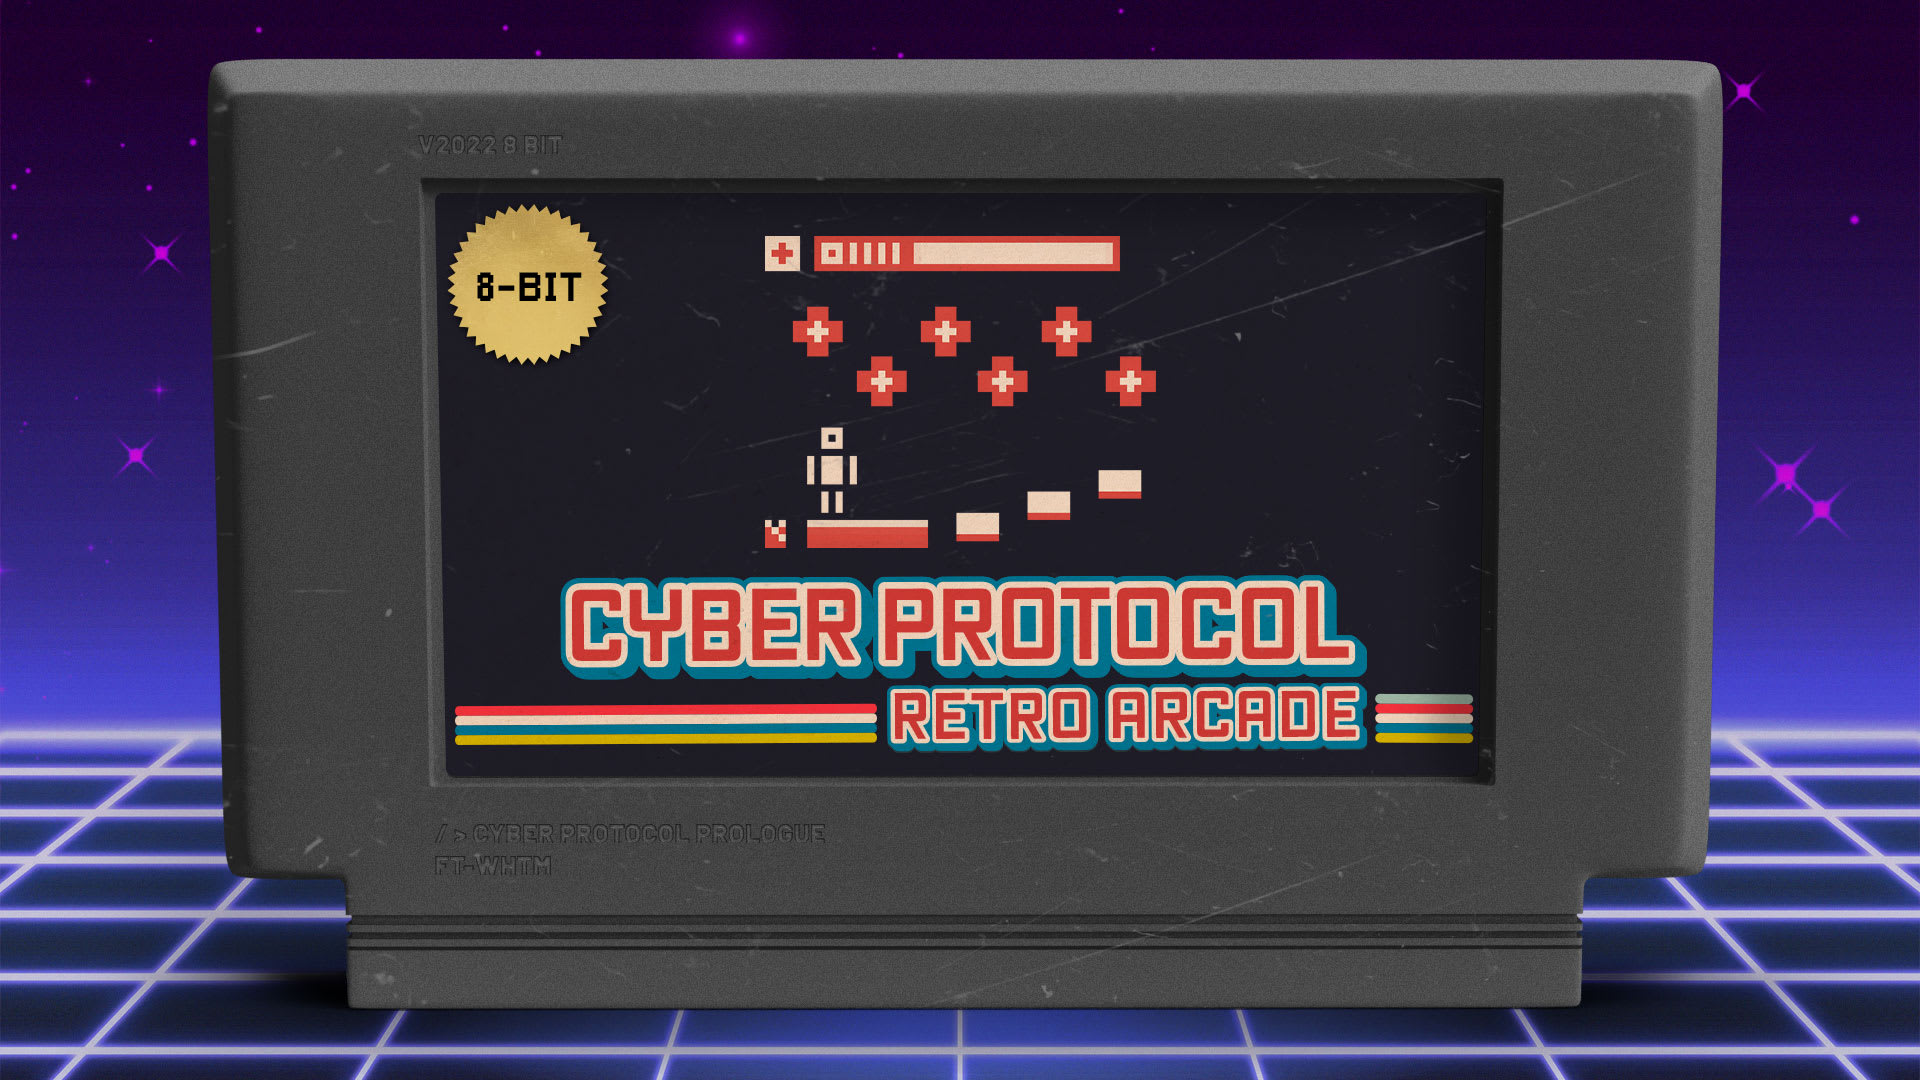 Cyber Protocol: RETRO ARCADE